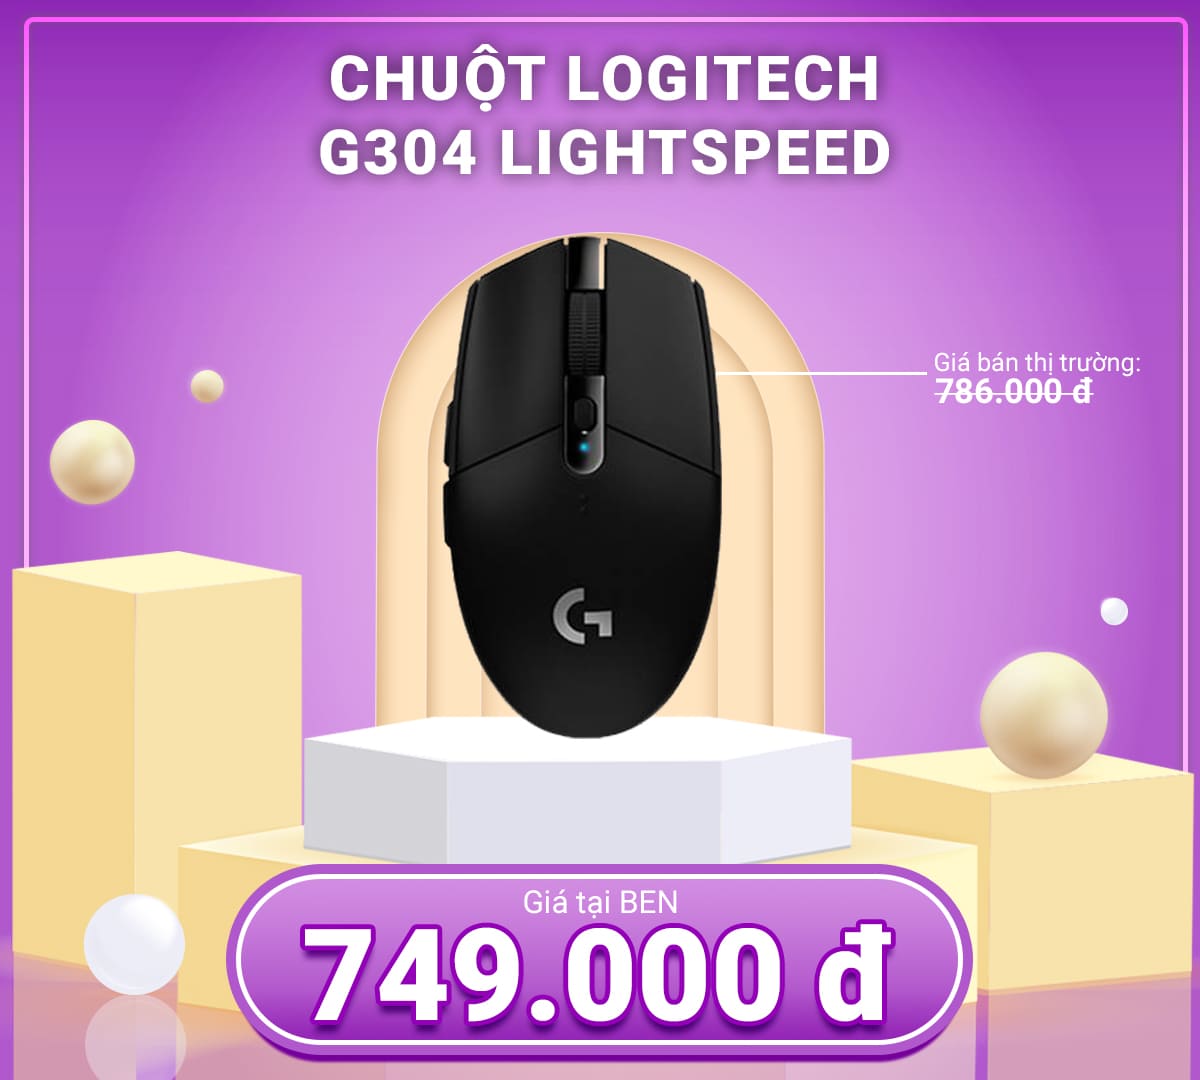 Chuot Logitech G304 LIGHTSPEED